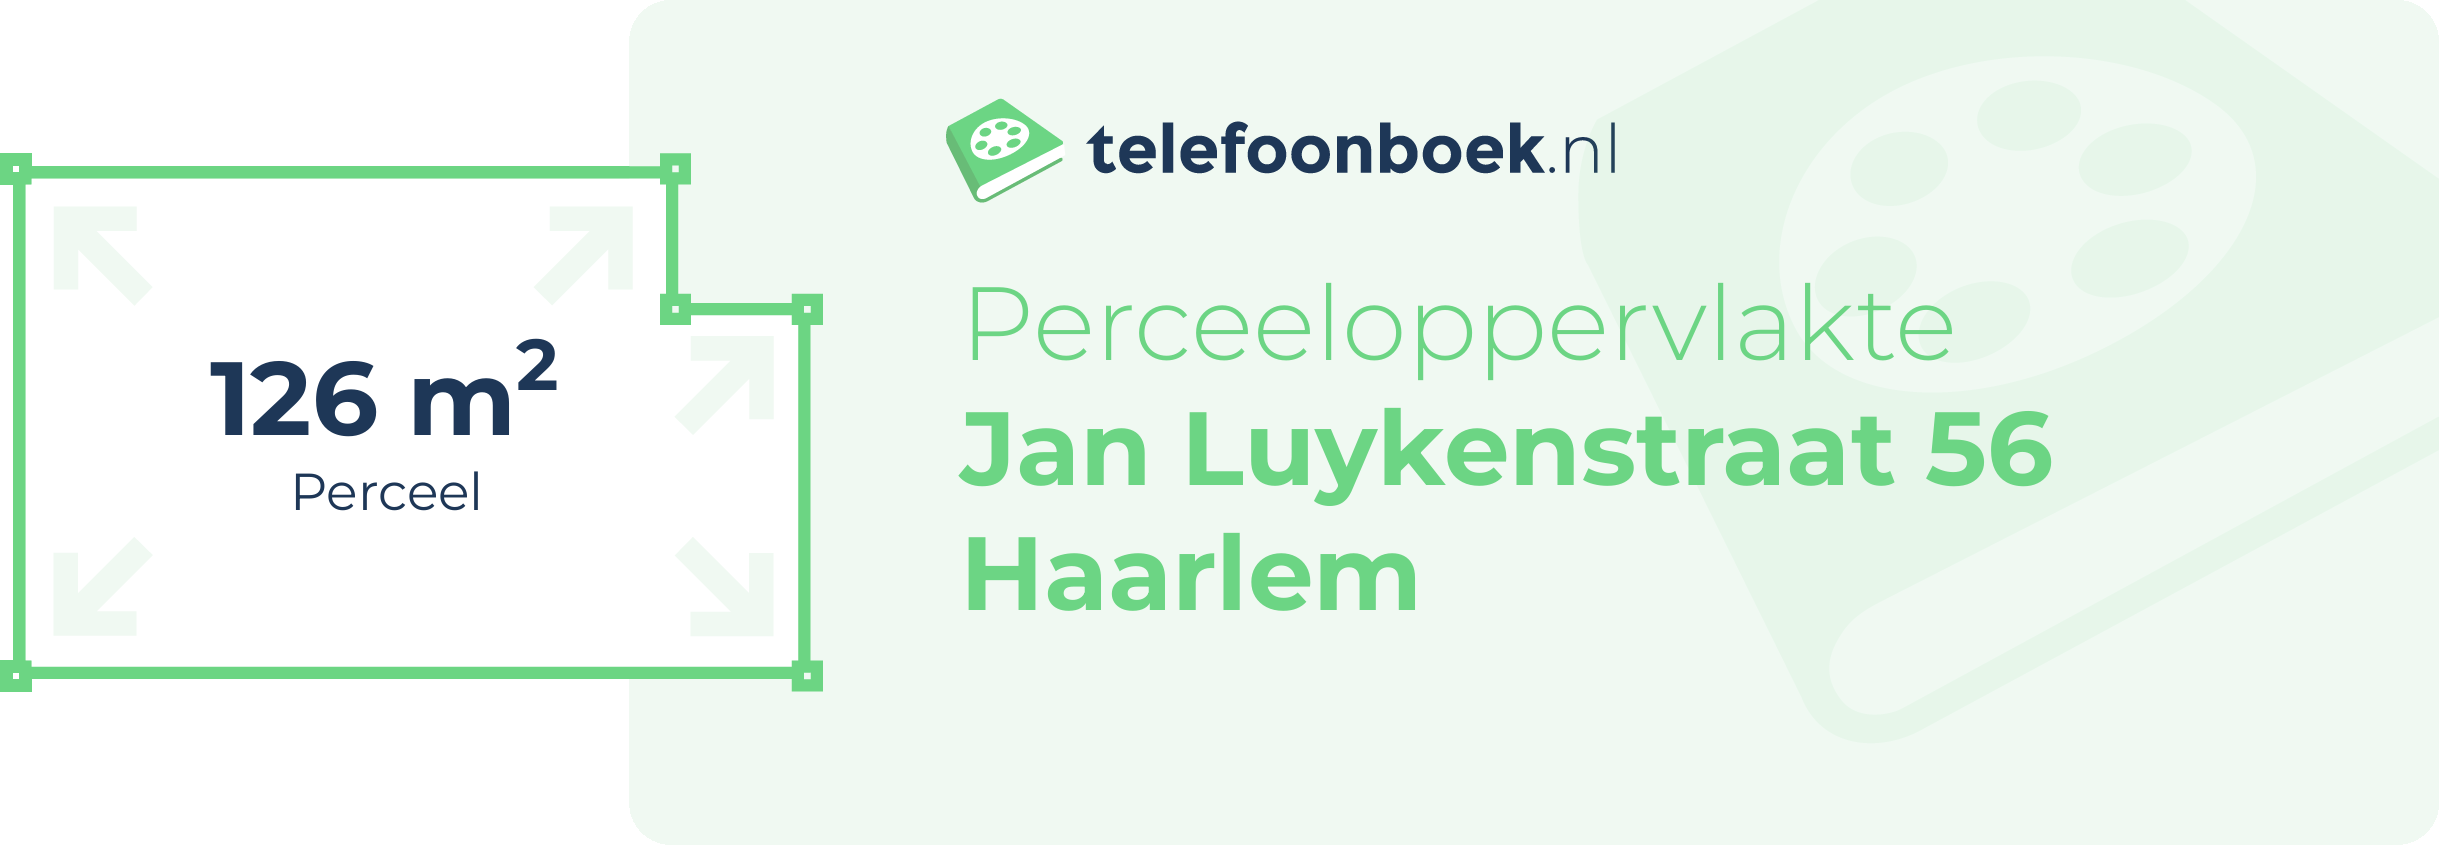 Perceeloppervlakte Jan Luykenstraat 56 Haarlem